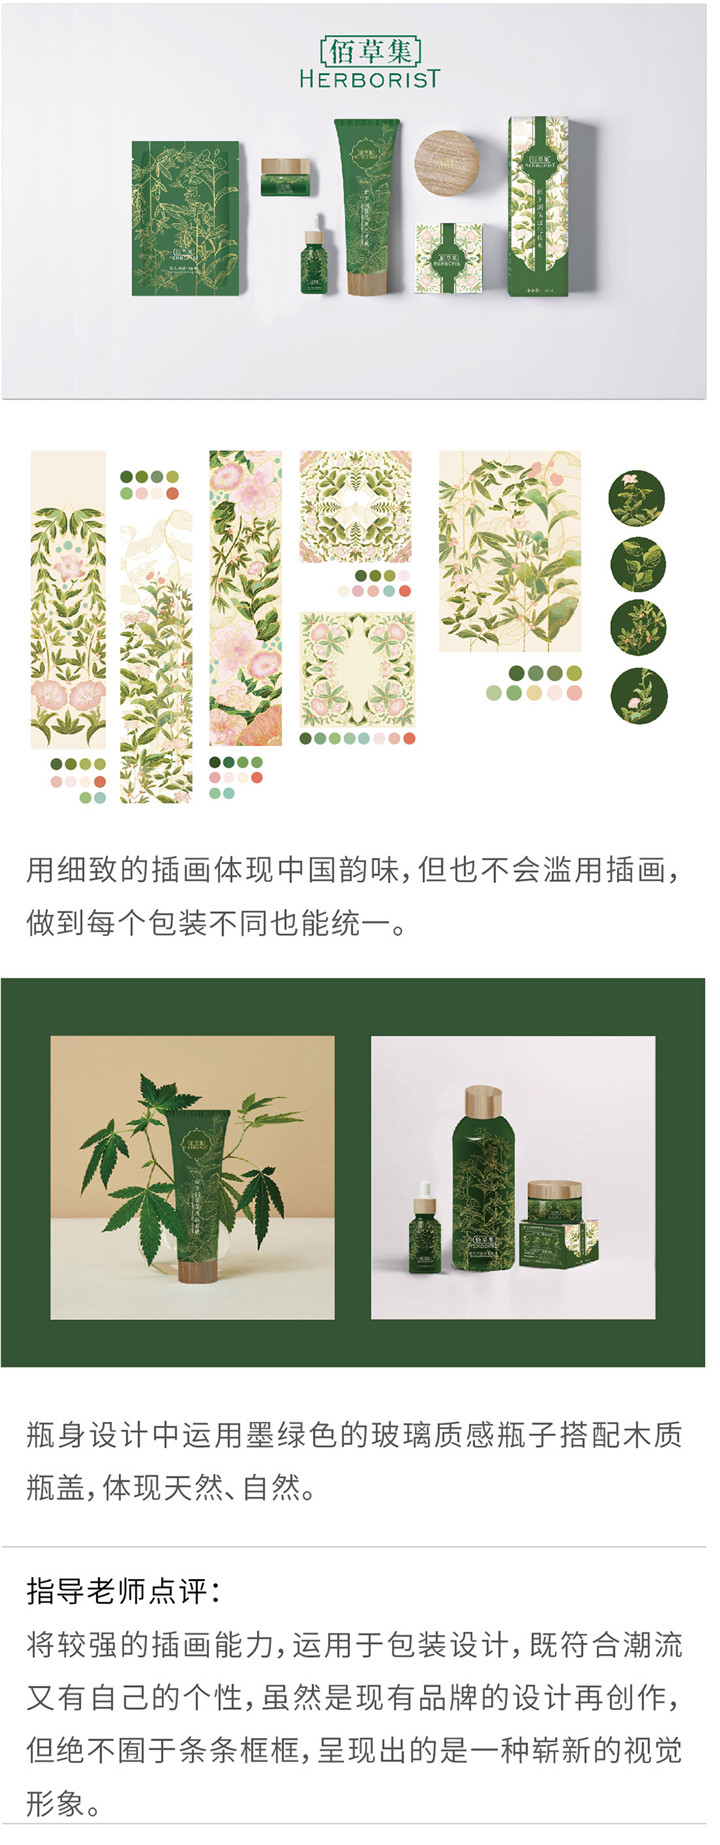 视觉传达——佰草集“新玉润”系列包装设计-设计中国